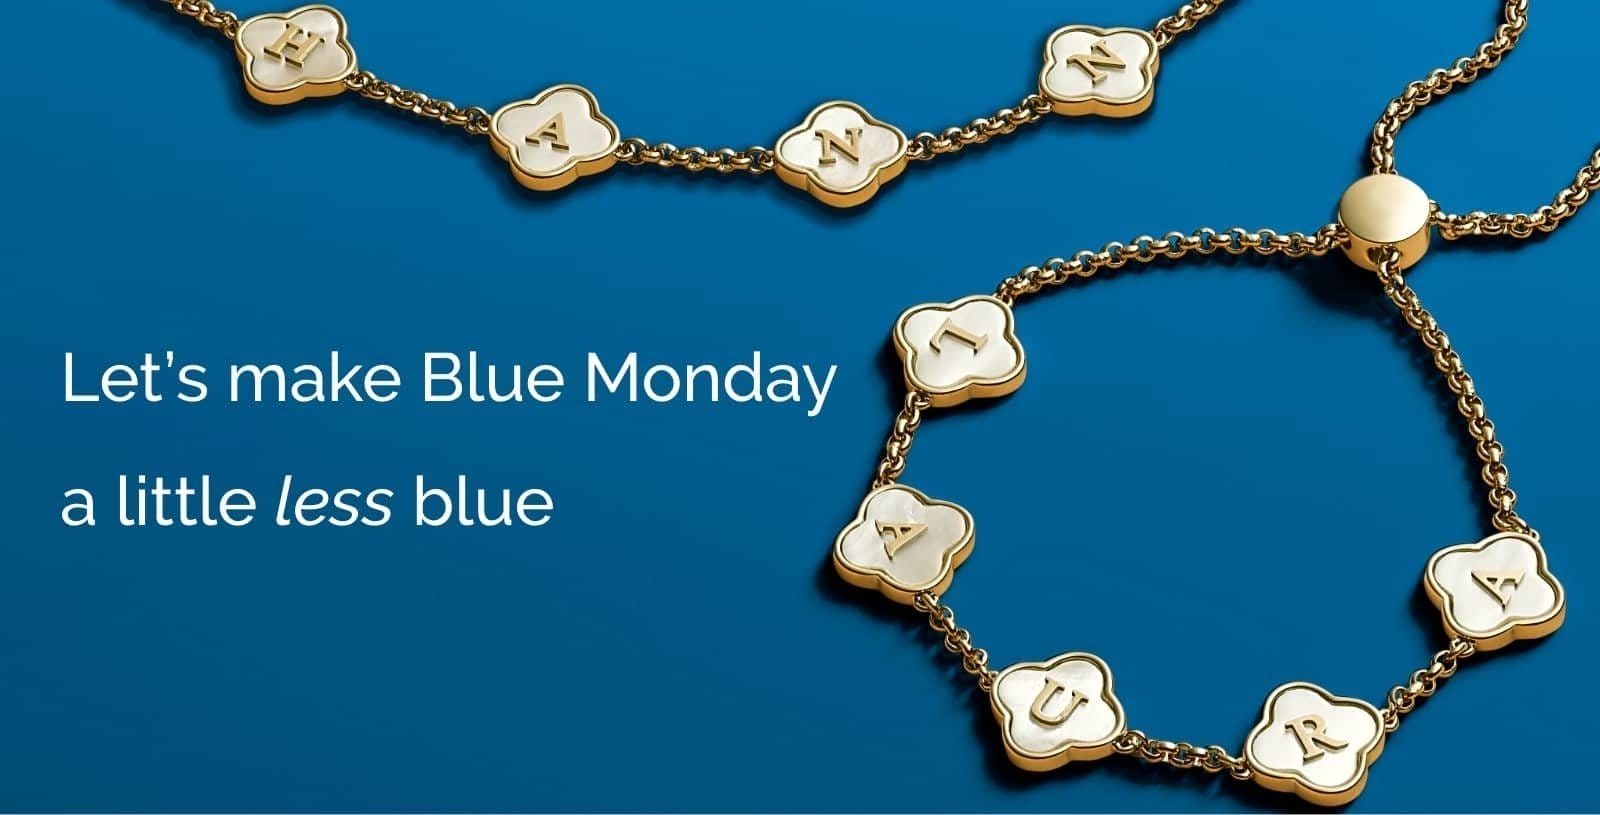 Shop blue Monday sale